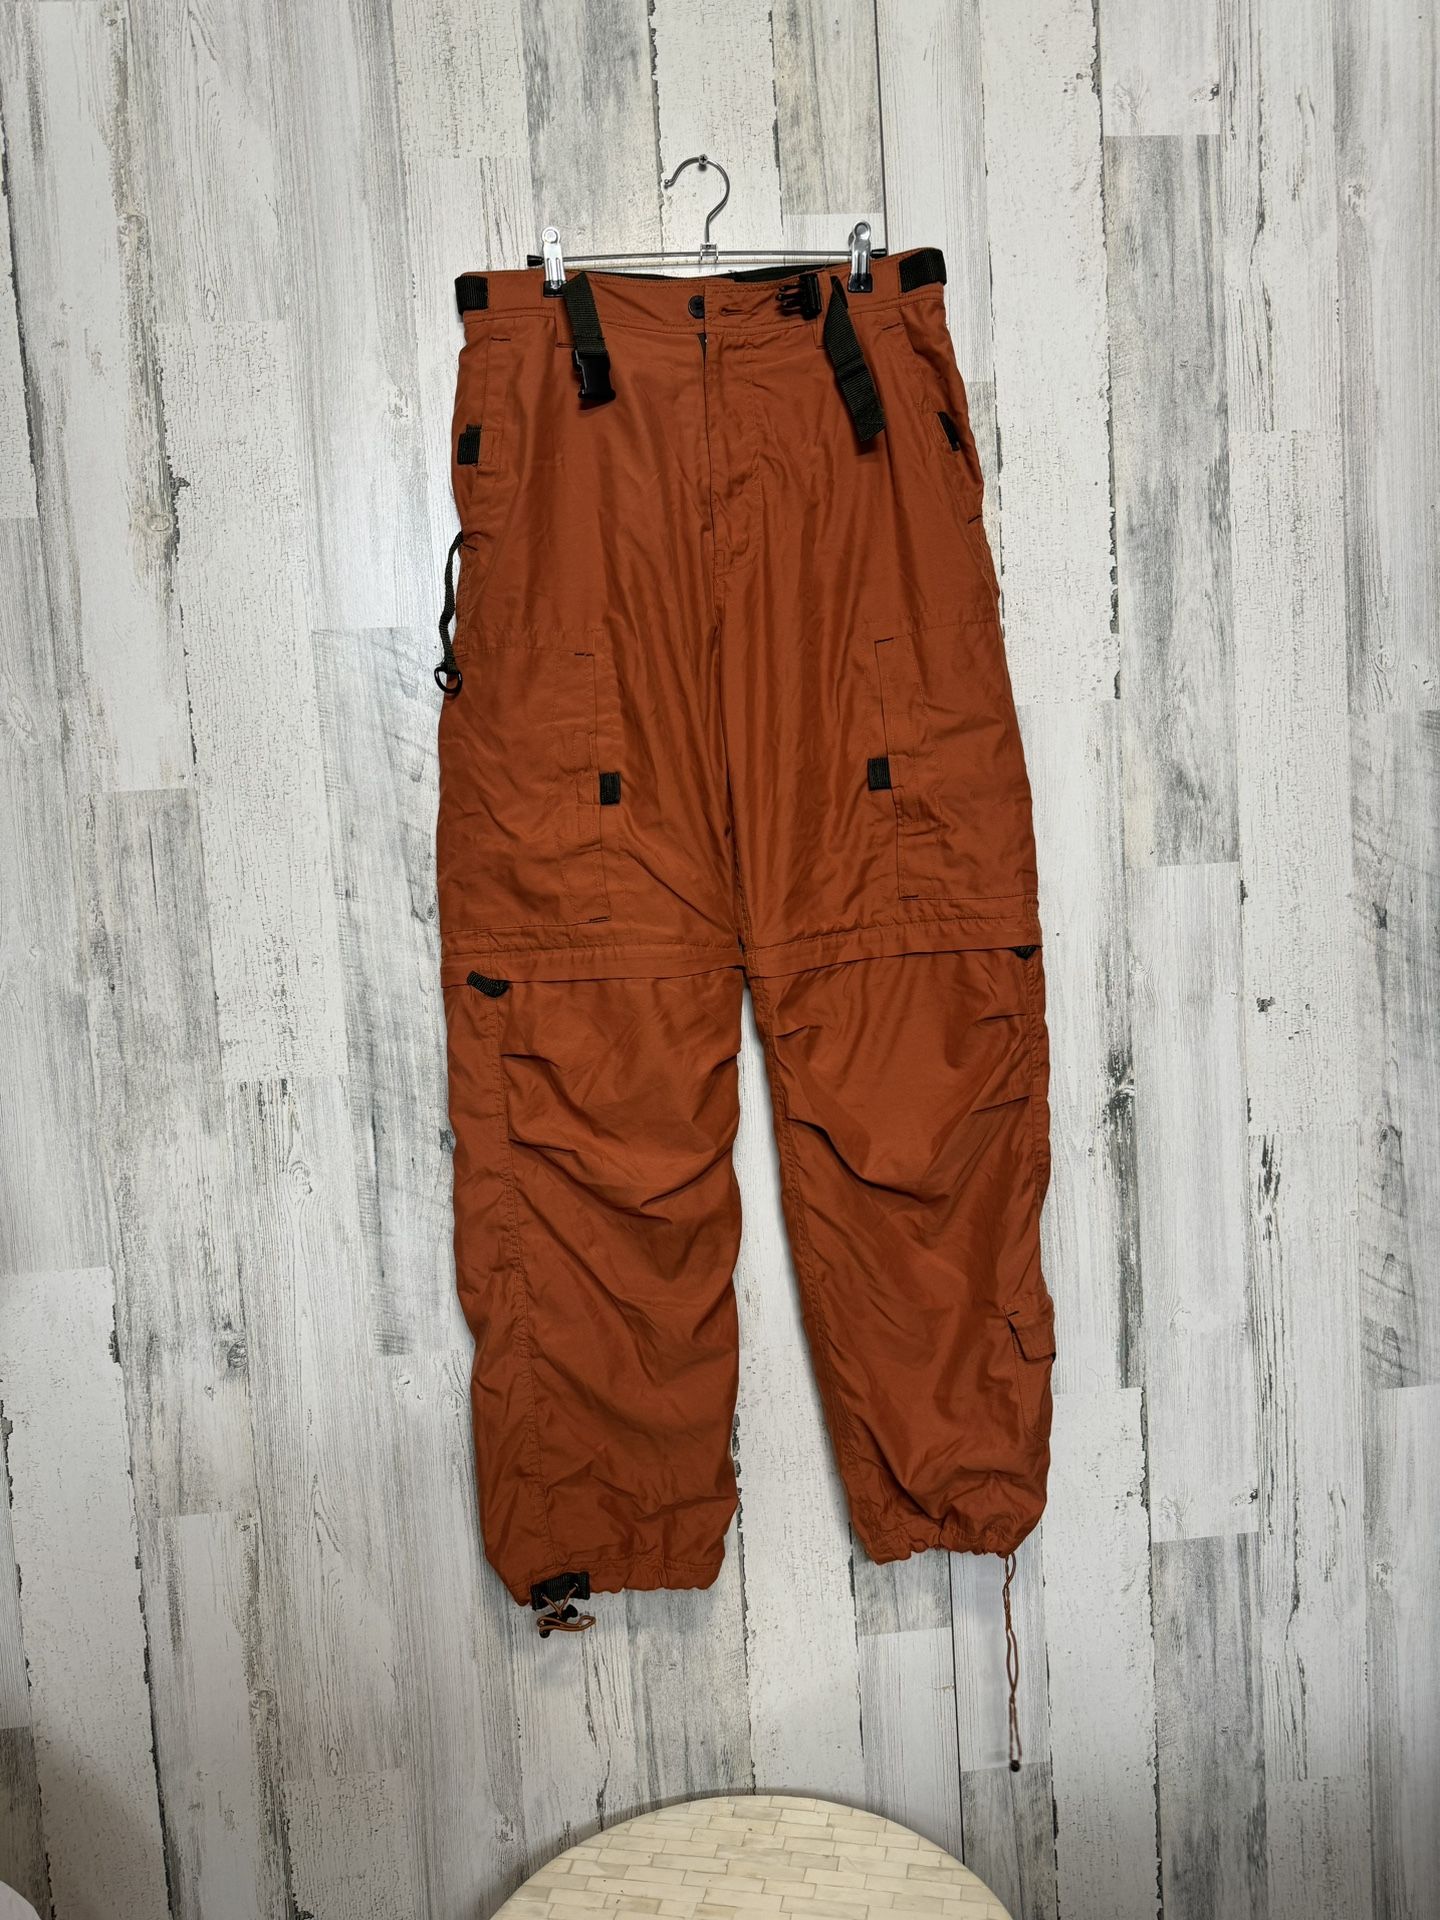 Orange Cargo Pants 